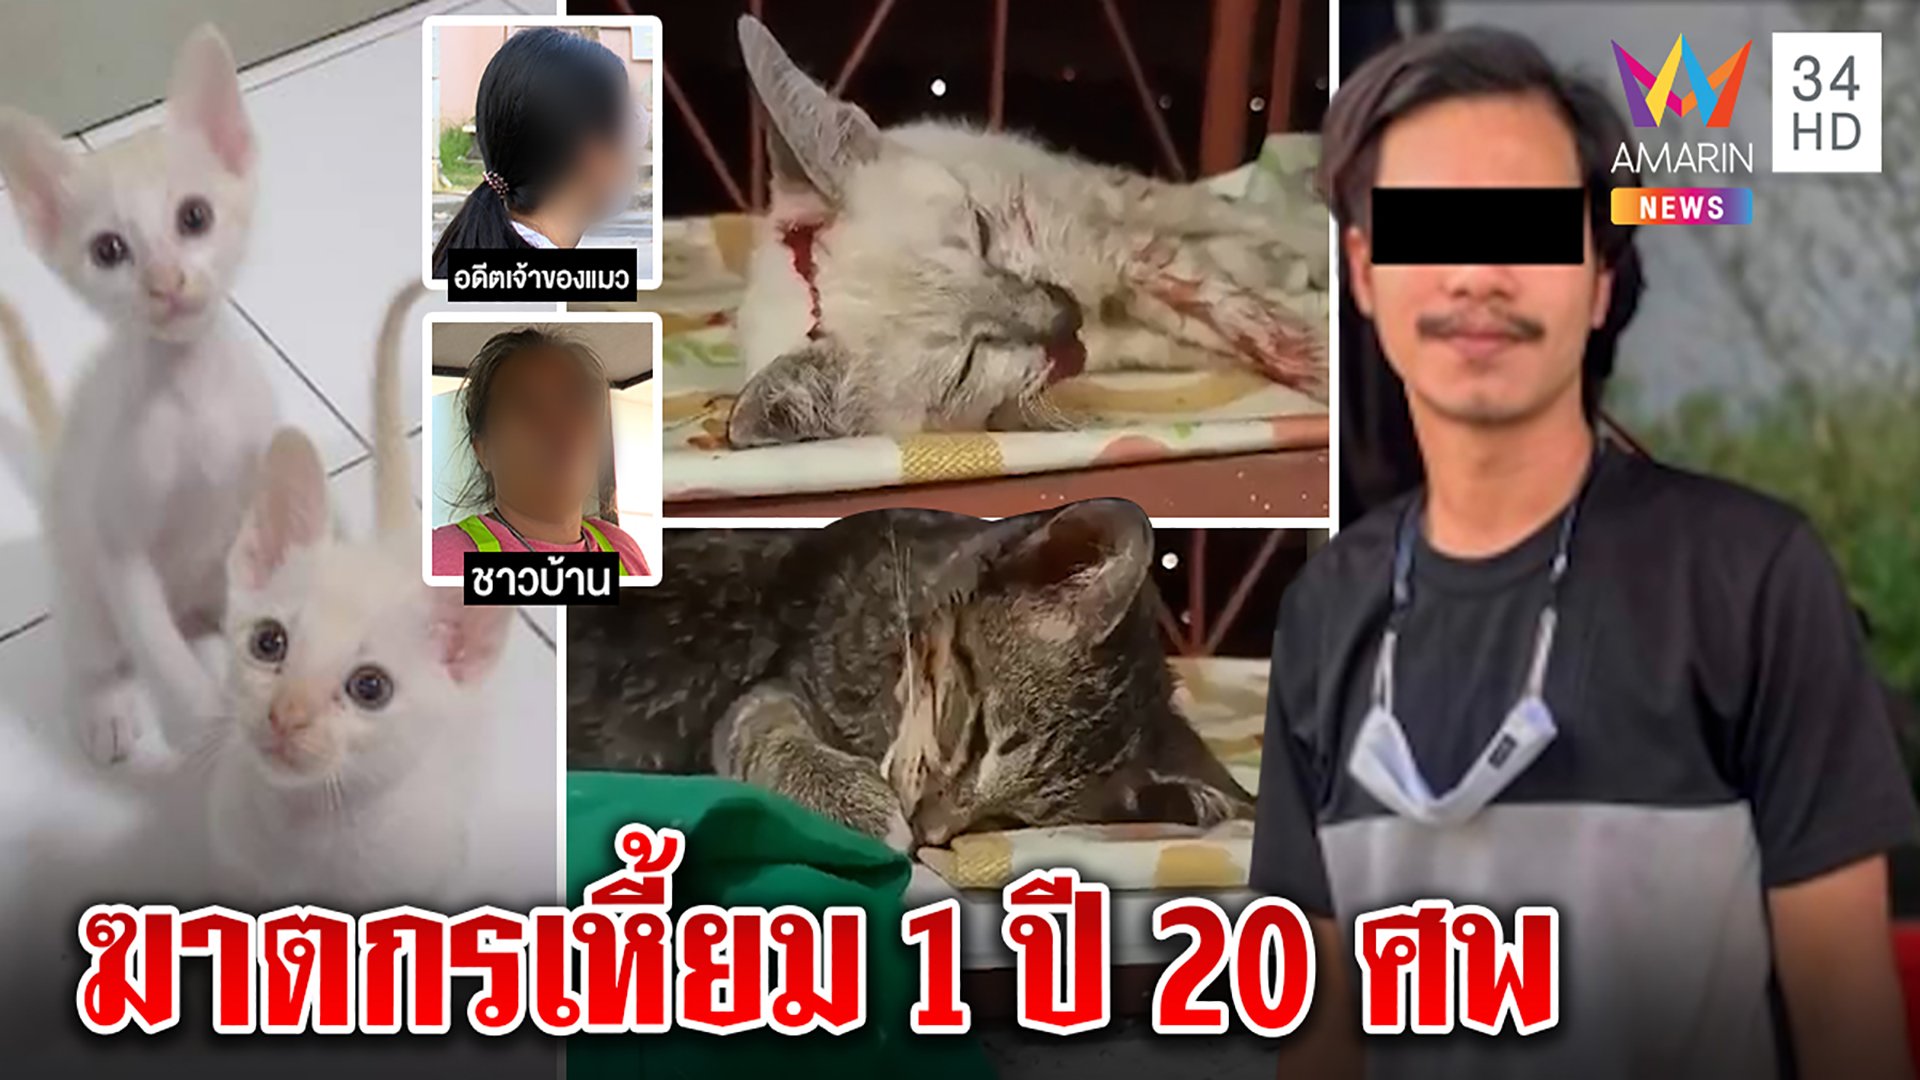 สาวปล่อยโฮโจ๋วิปริตขอแมวไปฆ่า เพื่อนบ้านแฉบุหรี่จี้ทุ่มพื้นฝังมาแล้ว 20 ศพ  | ทุบโต๊ะข่าว | 14 ม.ค. 65 | AMARIN TVHD34